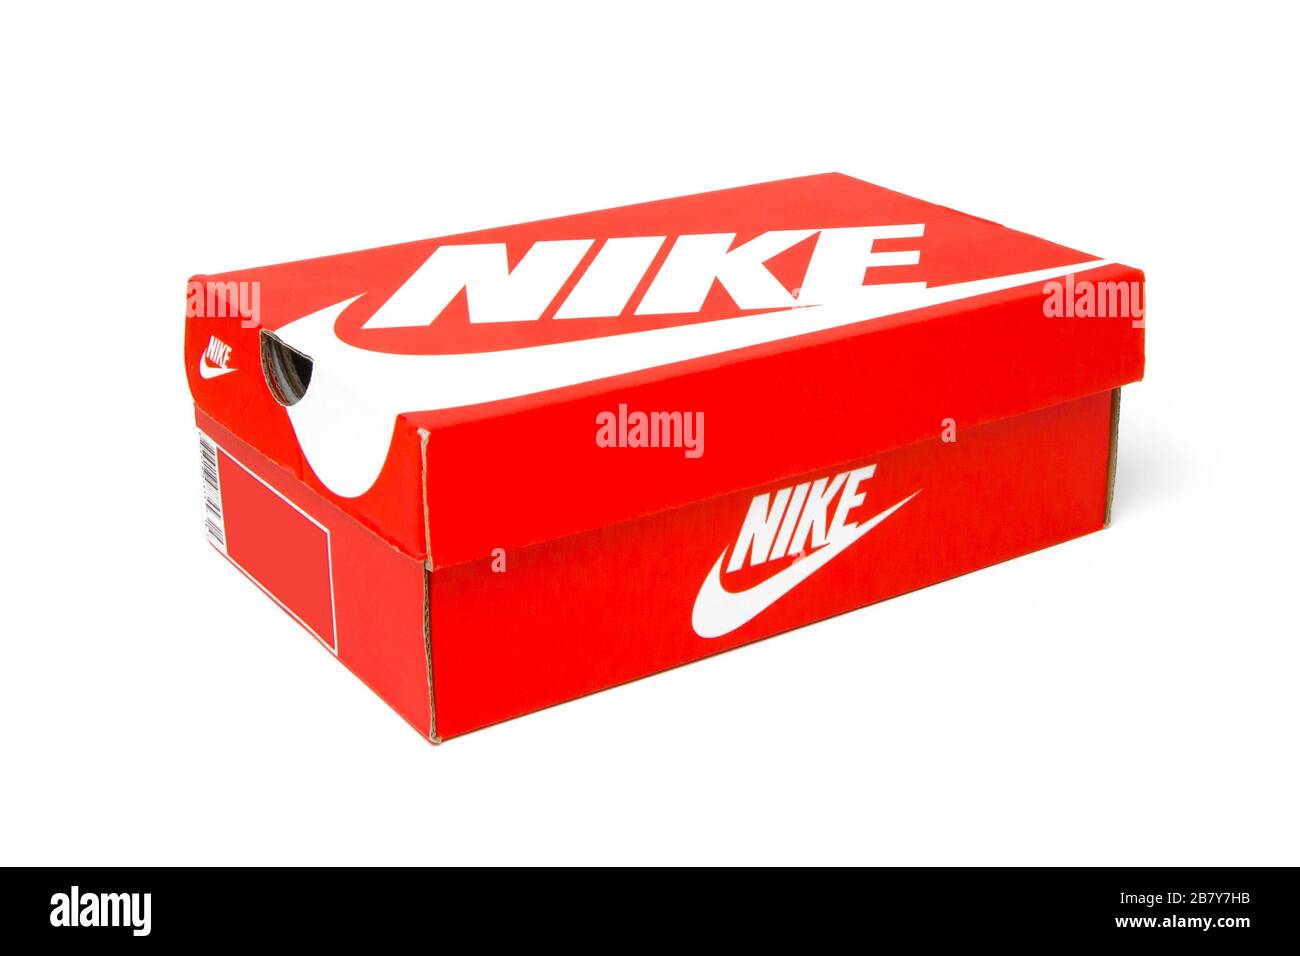 La scatola Nike Shoes è isolata su sfondo bianco. Scatola rossa per gli  snickers. San Francisco, USA, marzo 2020 Foto stock - Alamy